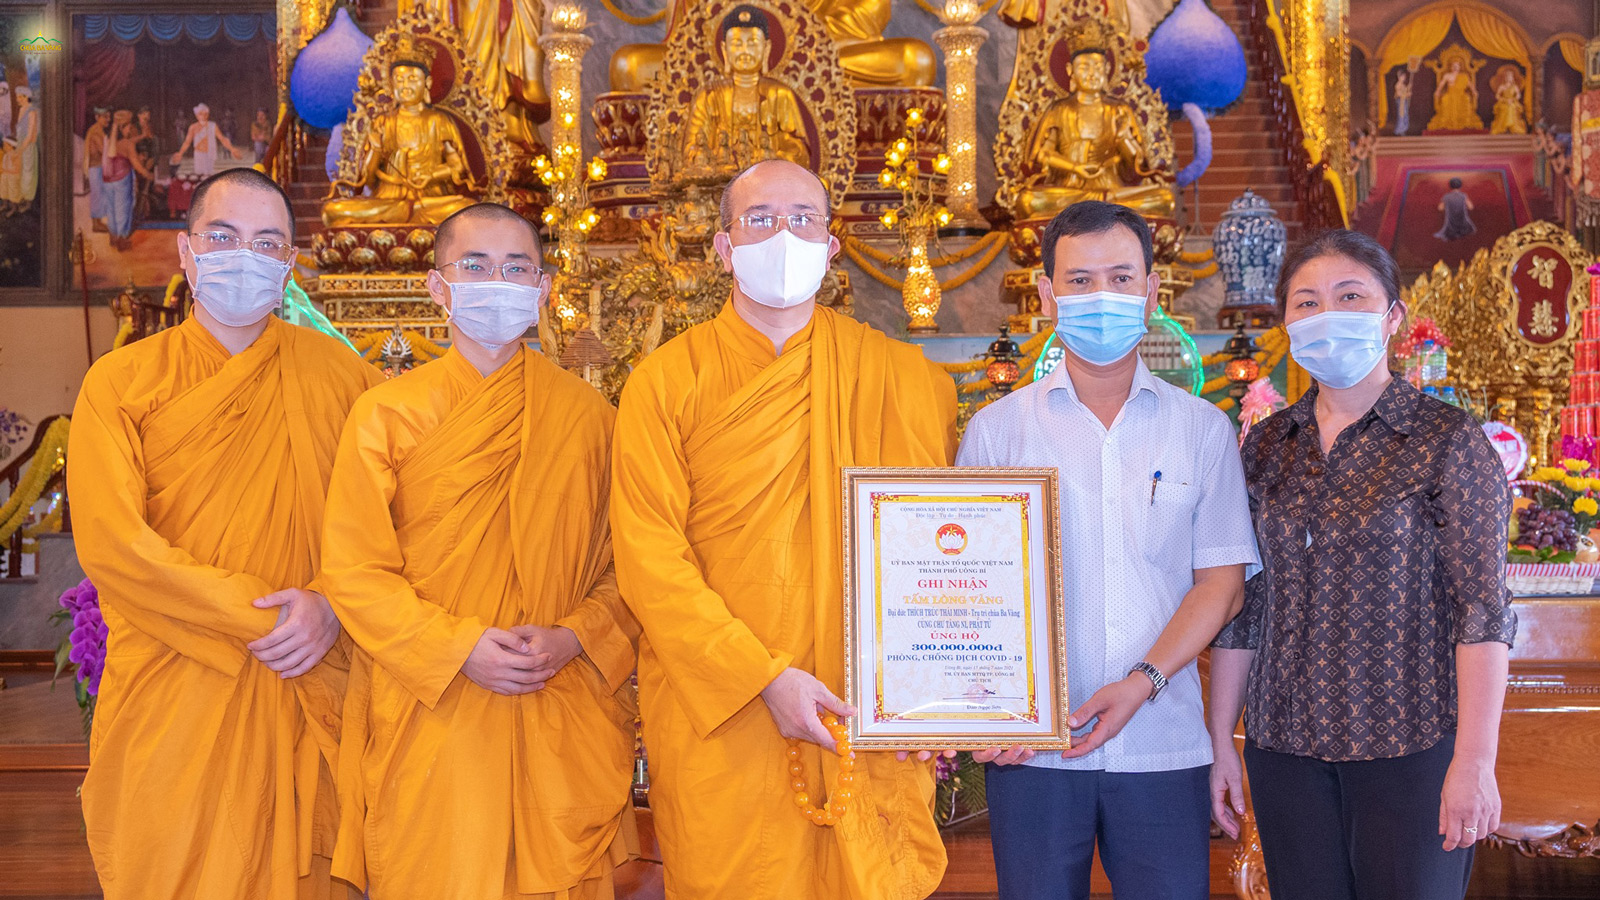 Nhân dịp này, UBMTTQ thành phố Uông Bí đã trao tặng bằng ghi nhận “Tấm lòng vàng” tới chư Tăng Ni, Phật tử chùa Ba Vàng vì thời gian qua đã có nhiều hoạt động thiết thực, góp phần chung tay vào công cuộc phòng, chống dịch COVID-19 của thành phố